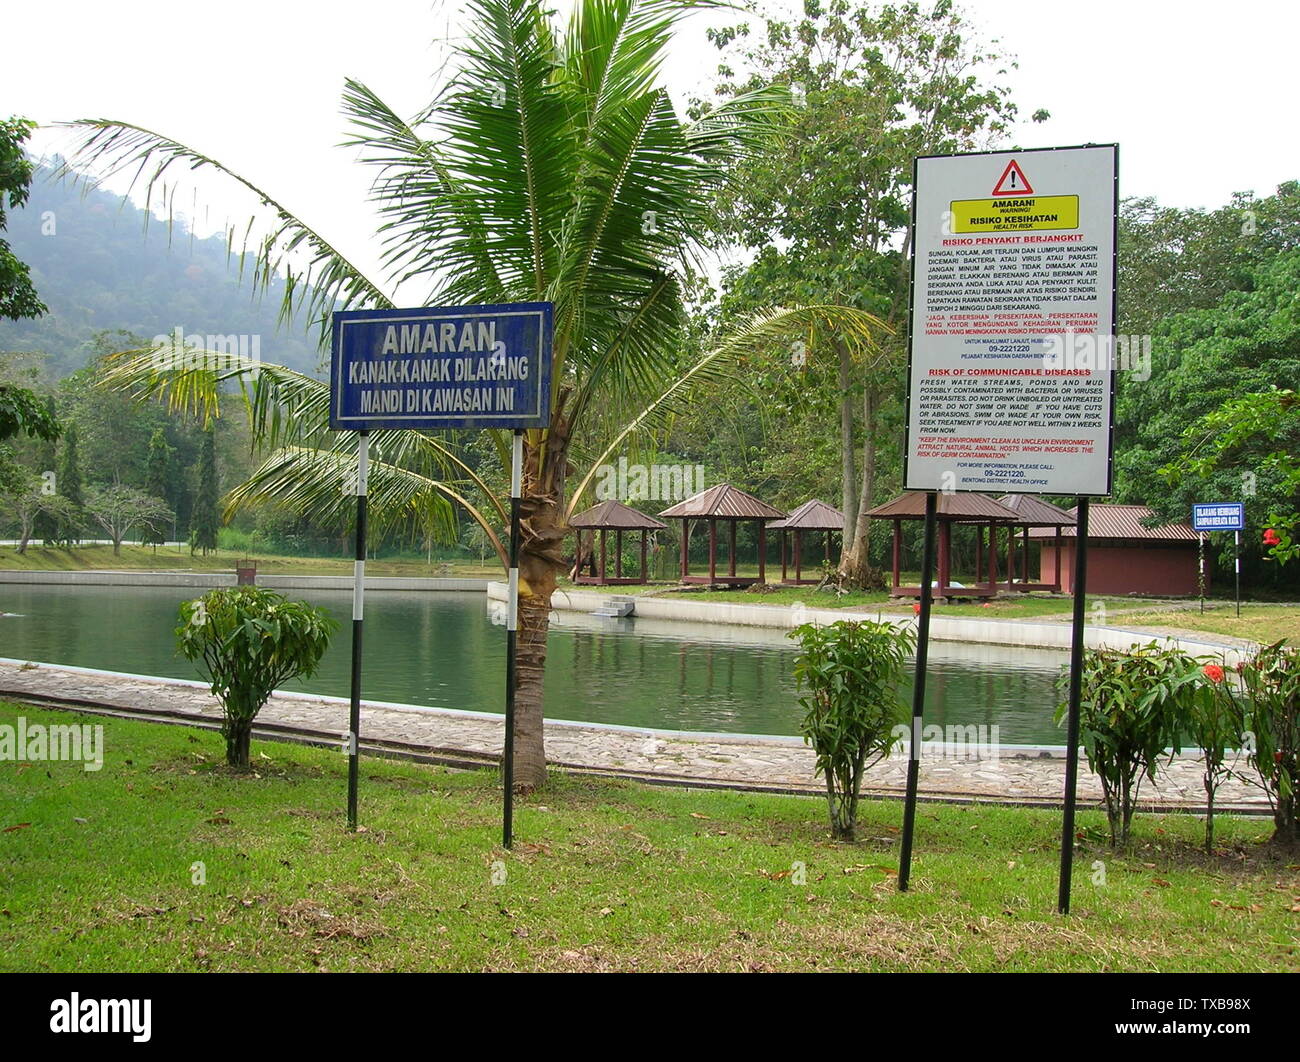 Bahasa Melayu: Papan tanda amaran untuk kanak-kanak, dan risiko kesihatan.; 19 February 2011 (original upload date); Own workTransferred from ms.pedia; Kerina yin at ms.pedia; Stock Photo